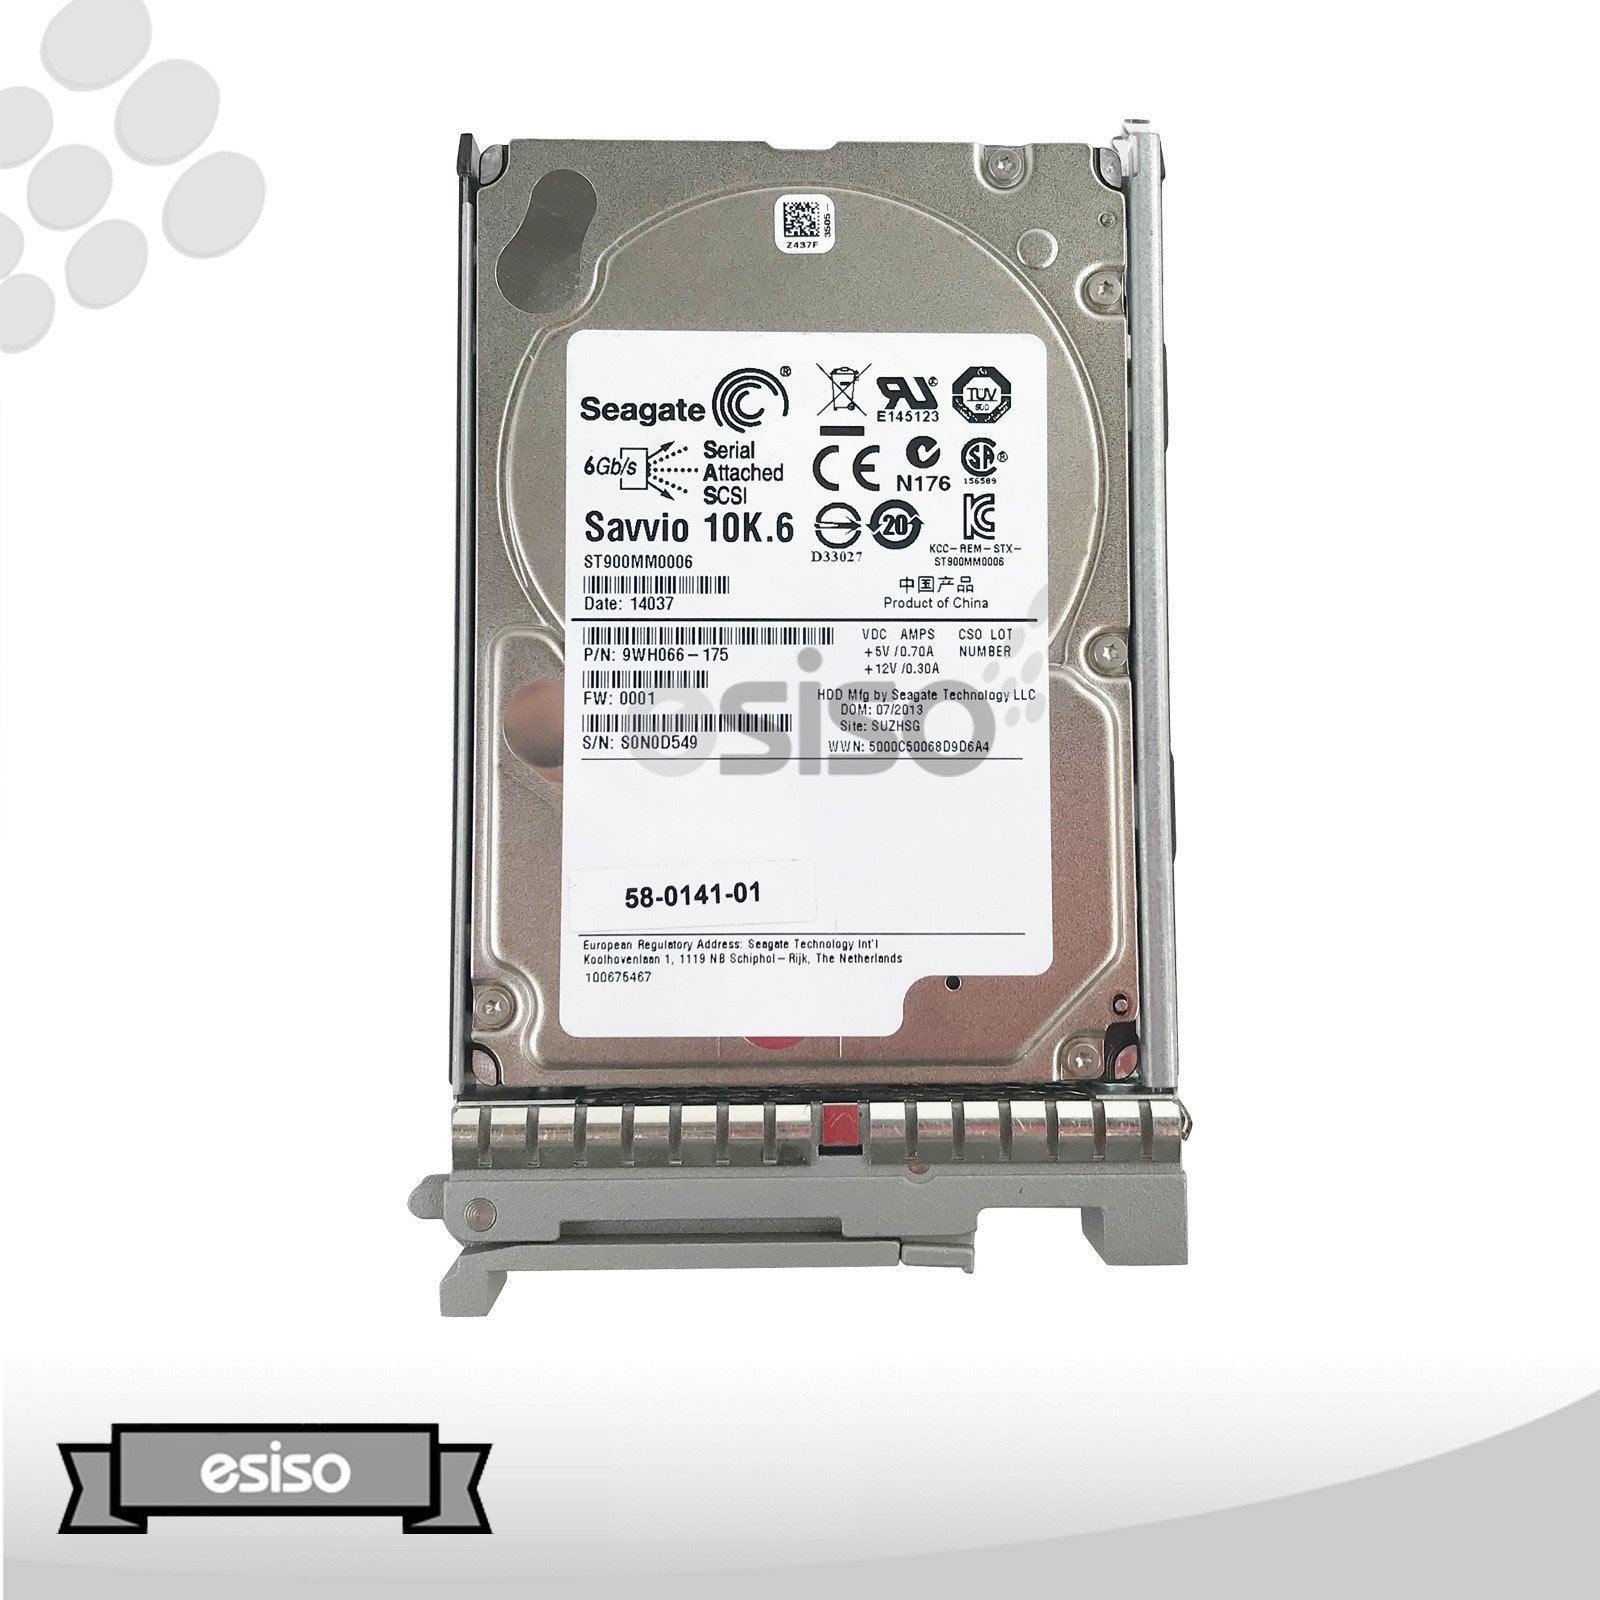 UCS-HDD900GI2F106 58-0141-01 ST9900805SS CISCO 900GB 10K 6G 2.5" SAS HARD DRIVE